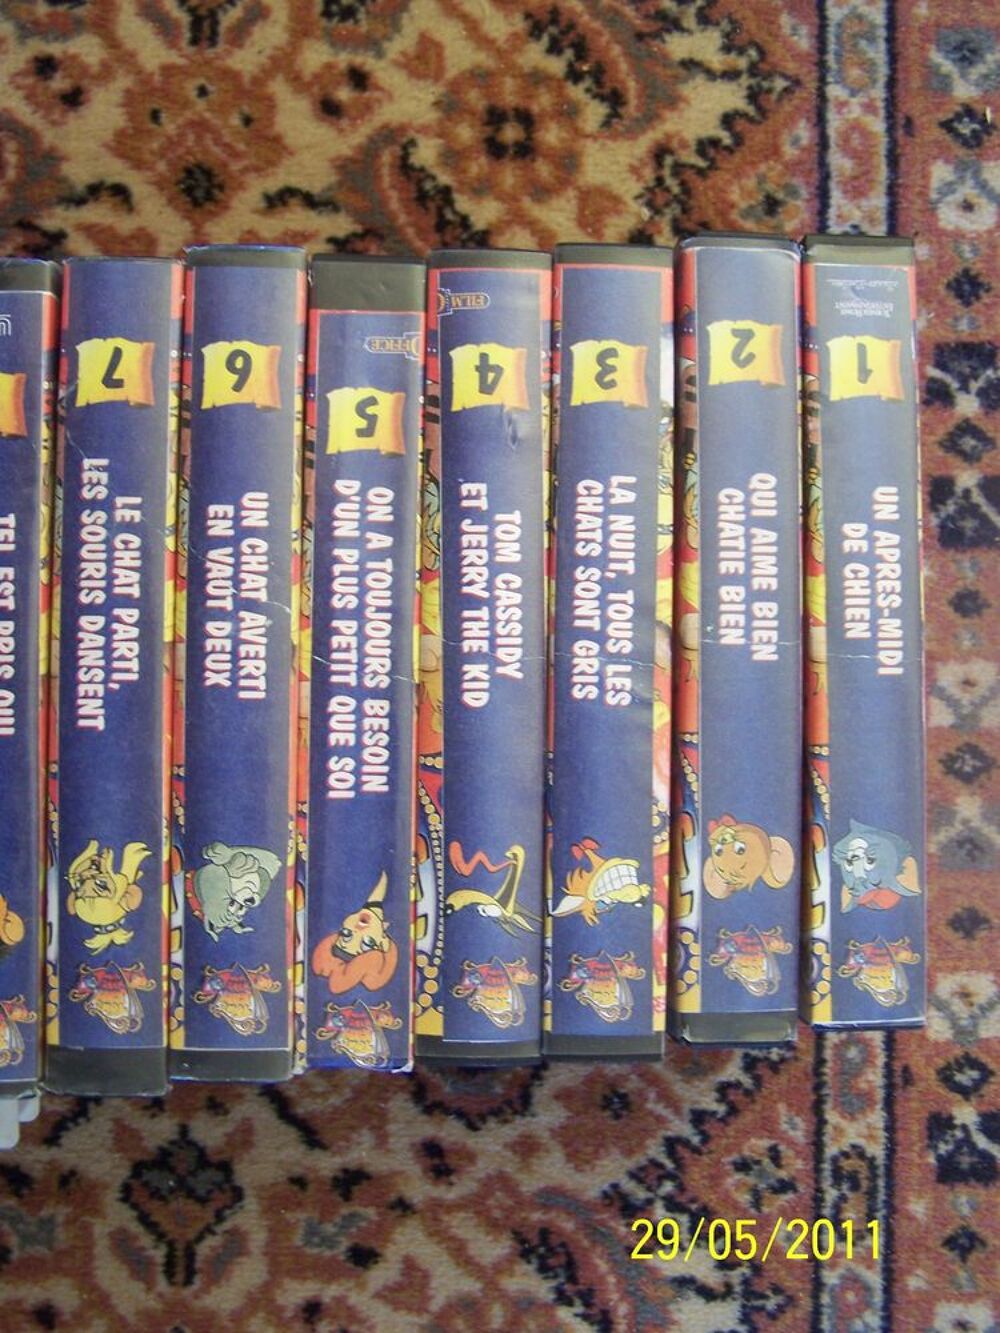 LOT DE VHS DE TOM ET JERRY VINTAGE EN COFFRET DVD et blu-ray